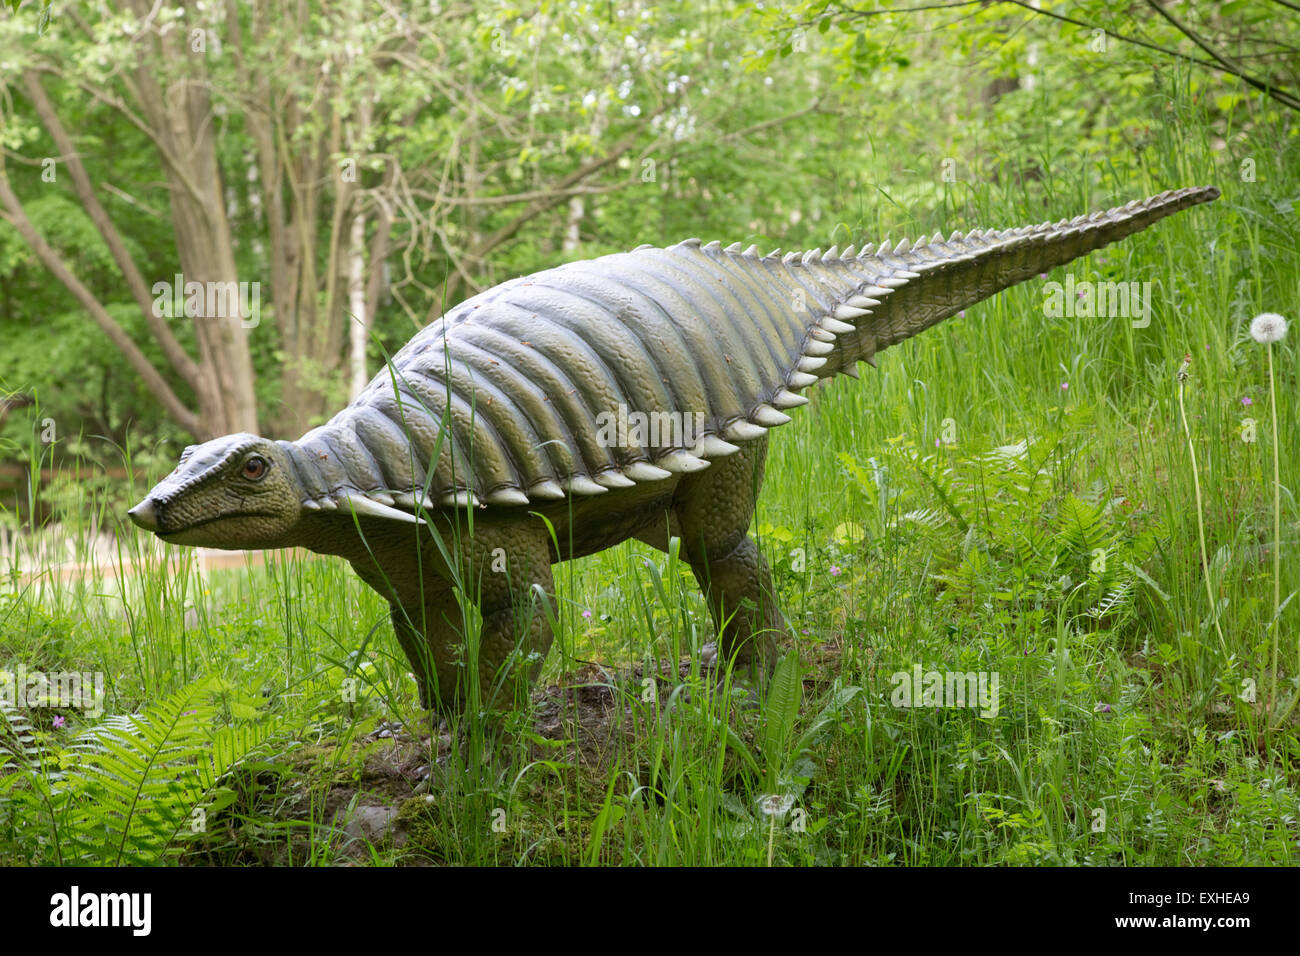 Typothorax ausgestorben pflanzenfressenden Aetosaur aus späten Triassic Dinosaurier Park Deutschland Stockfoto